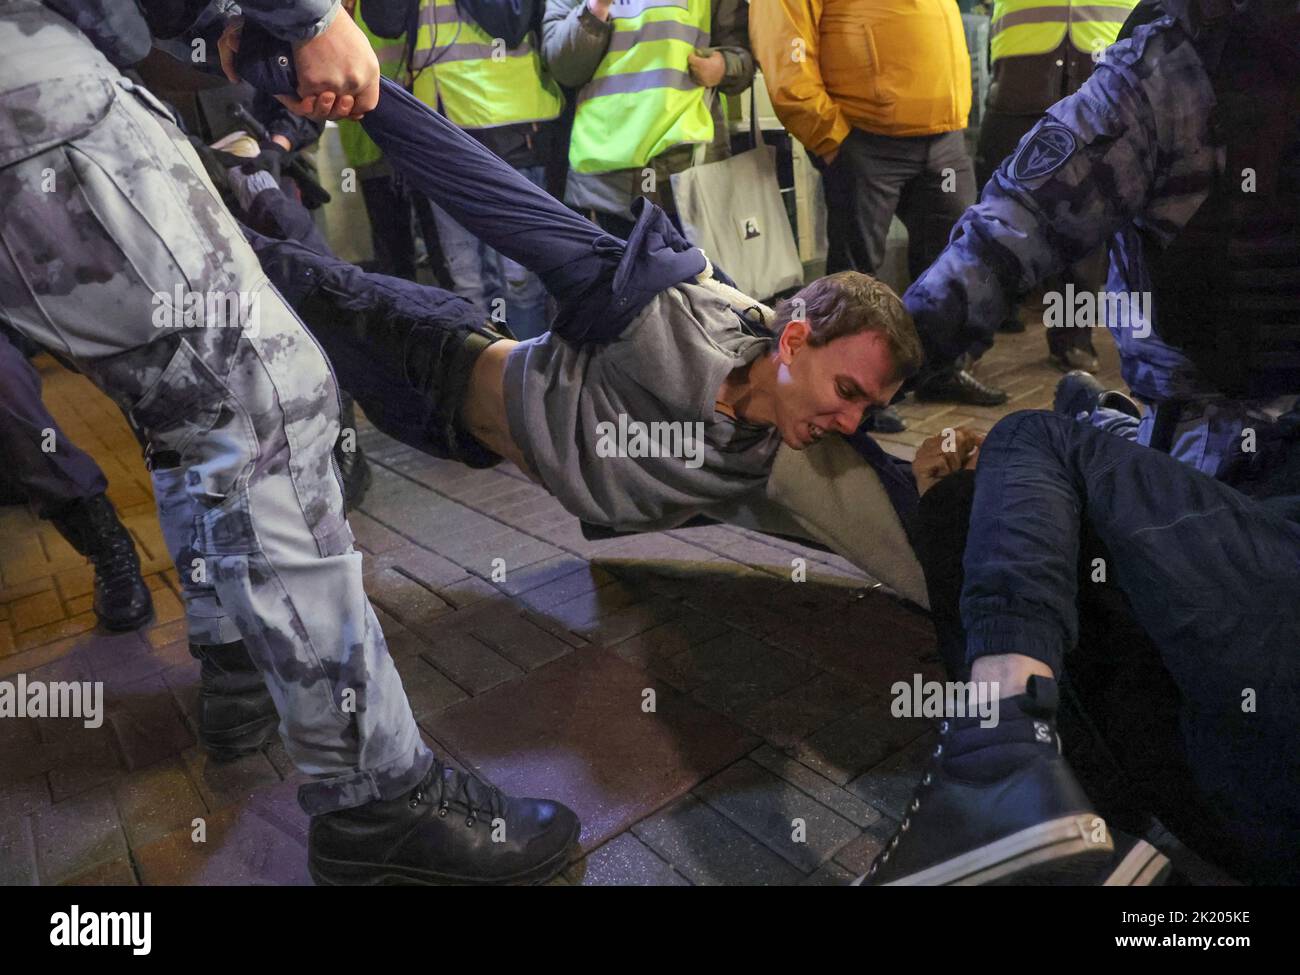 Russische Polizisten verhaften einen Mann während einer nicht sanktionierten Kundgebung, nachdem Oppositionelle zu Straßenprotesten gegen die Mobilisierung von Reservisten aufgerufen hatten, die von Präsident Wladimir Putin angeordnet wurden, in Moskau, Russland, am 21. September 2022. REUTERS/REUTERS-FOTOGRAF Stockfoto